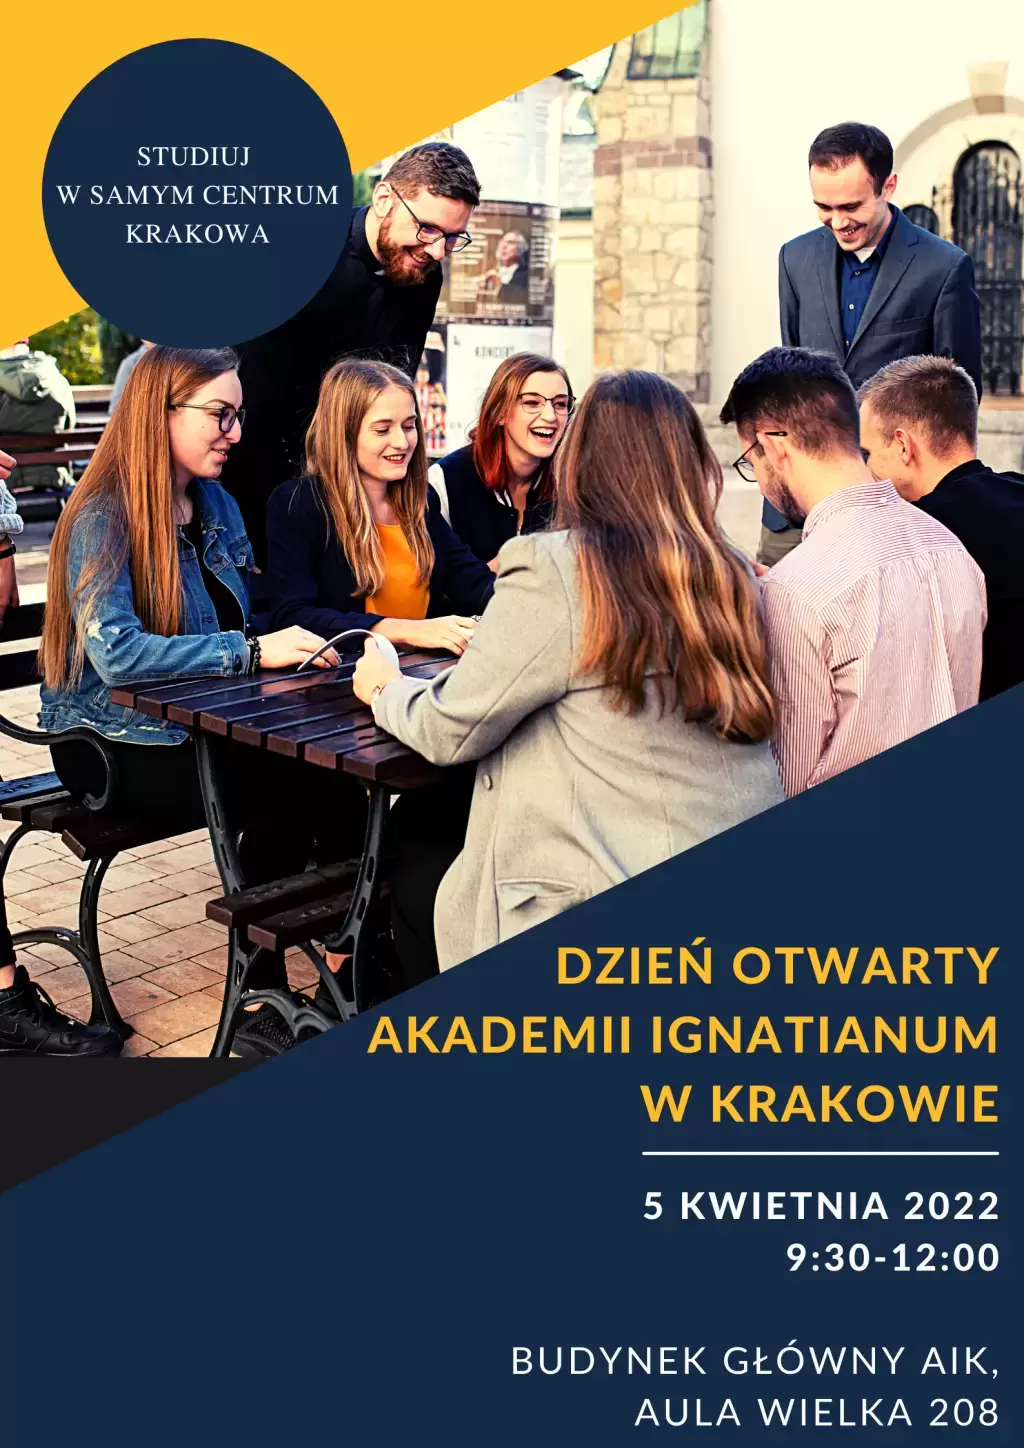 Dzień Otwarty w Akademii Ignatianum w Krakowie